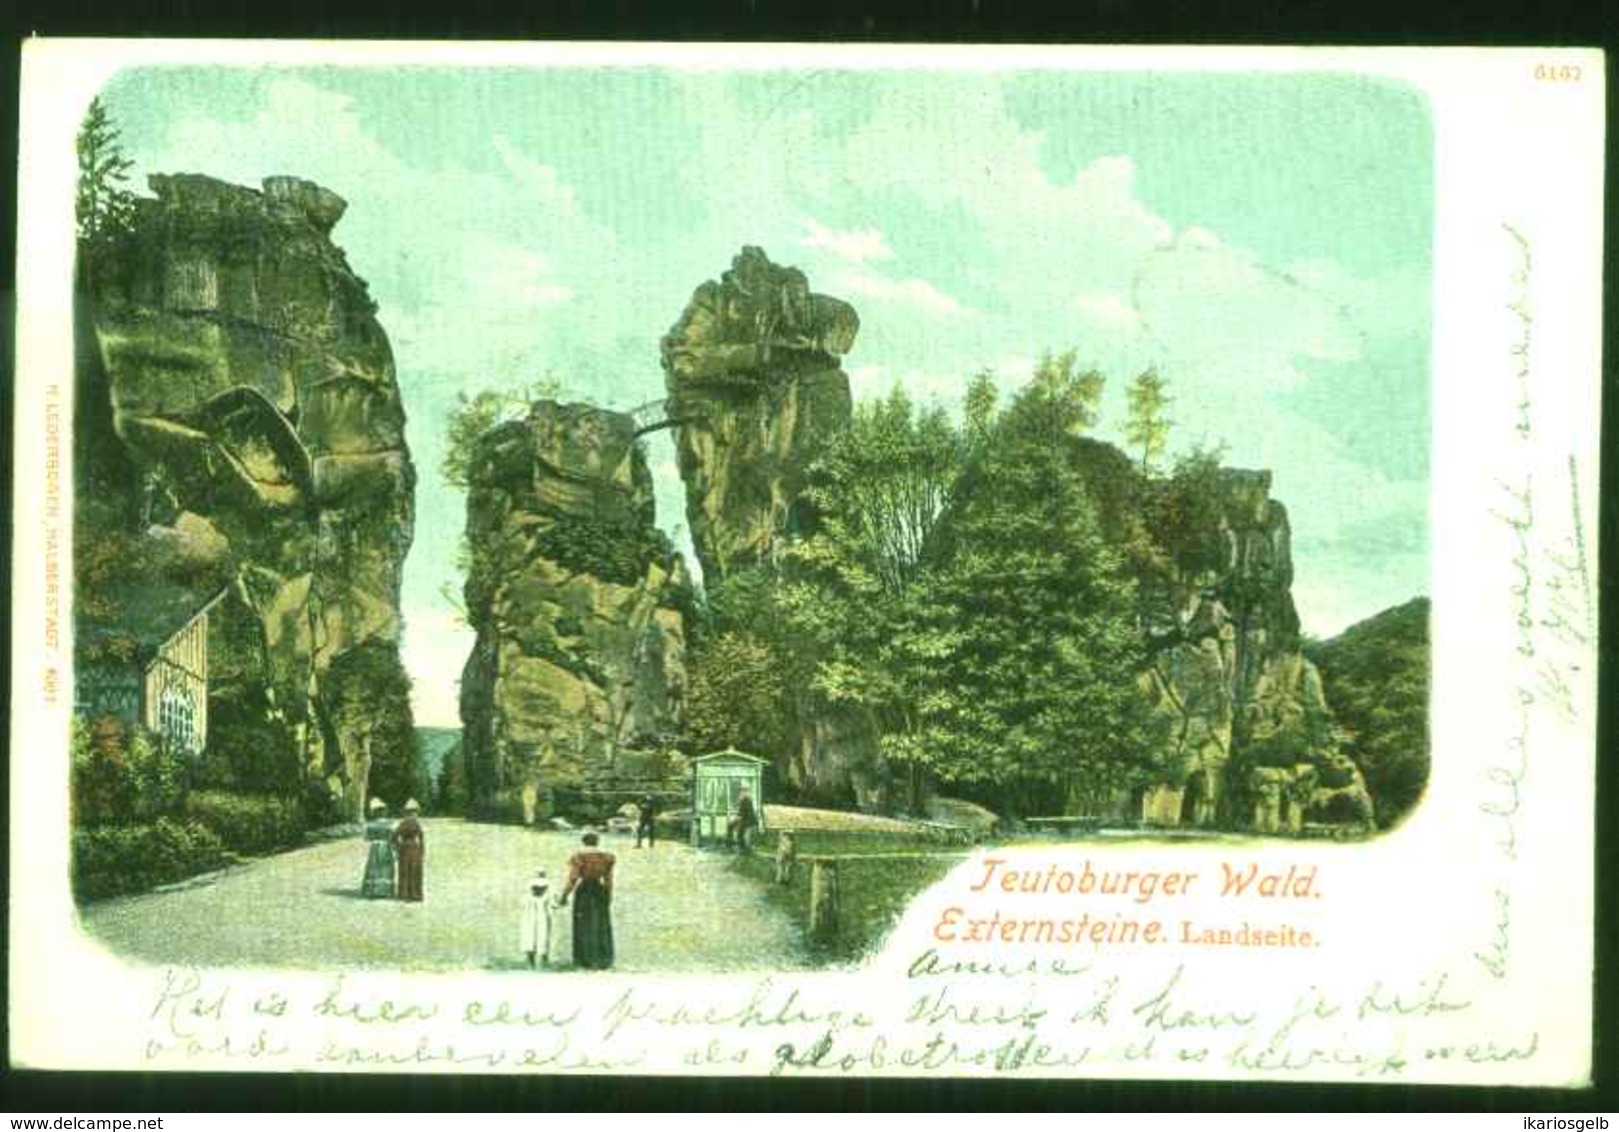 EXTERNSTEINE Bei Horn Bad Meinberg 1901 !! " Externsteine Landseite Mit Publikum " AuslandsBedarf 2x Germania > Weesp/NL - Bad Meinberg